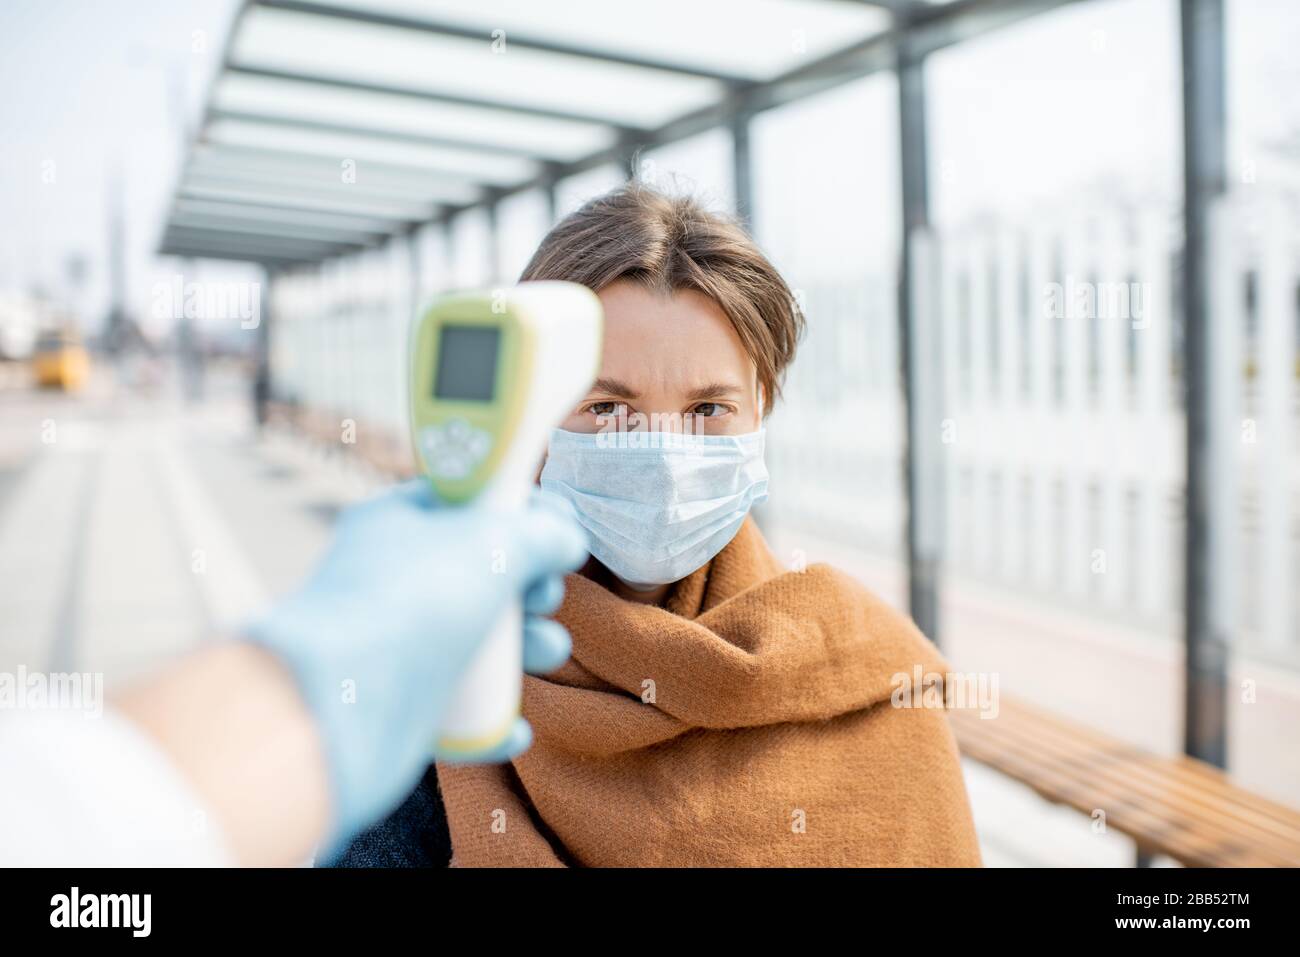 Misurazione della temperatura con termometro a infrarossi di una giovane donna in maschera facciale a un punto di controllo durante un'epidemia all'aperto. Concetto di prevenzione della diffusione del virus Foto Stock